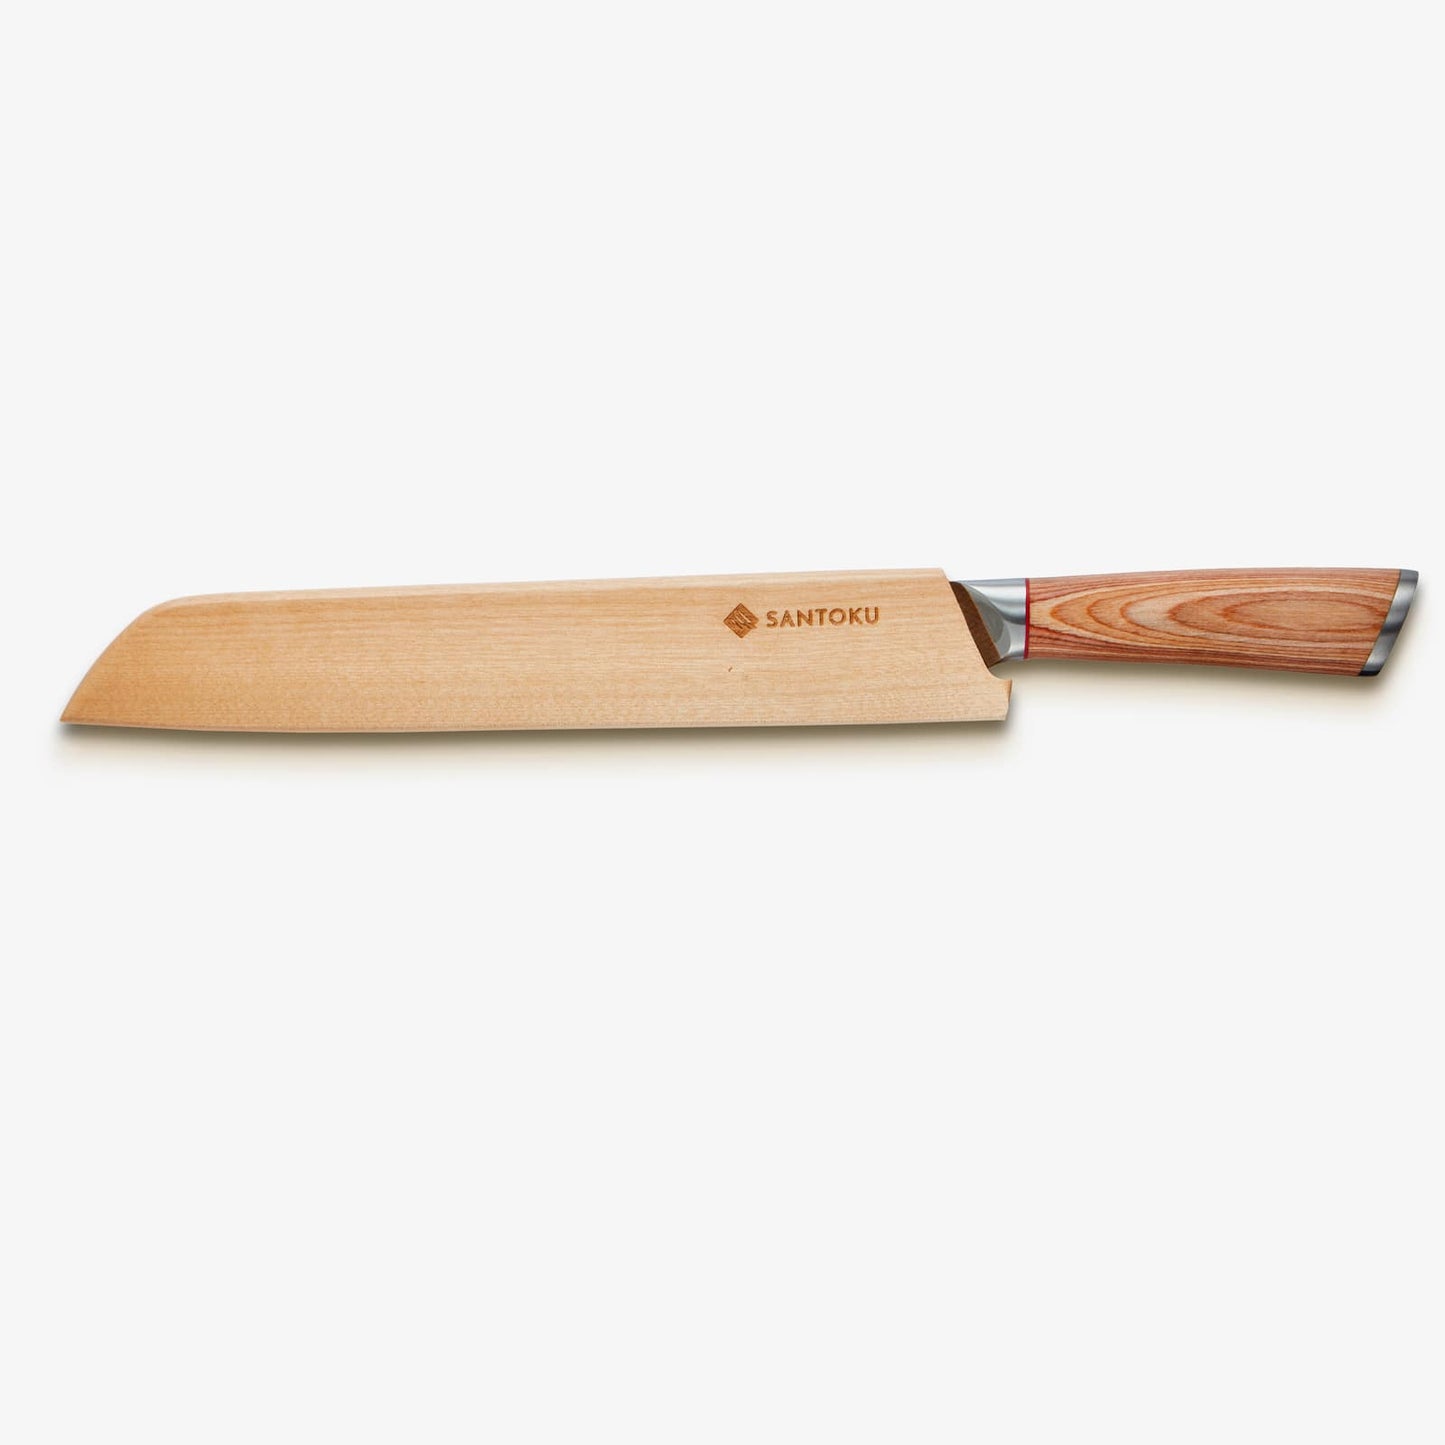 هاروتا (はるた) سكين خبز 10 بوصة